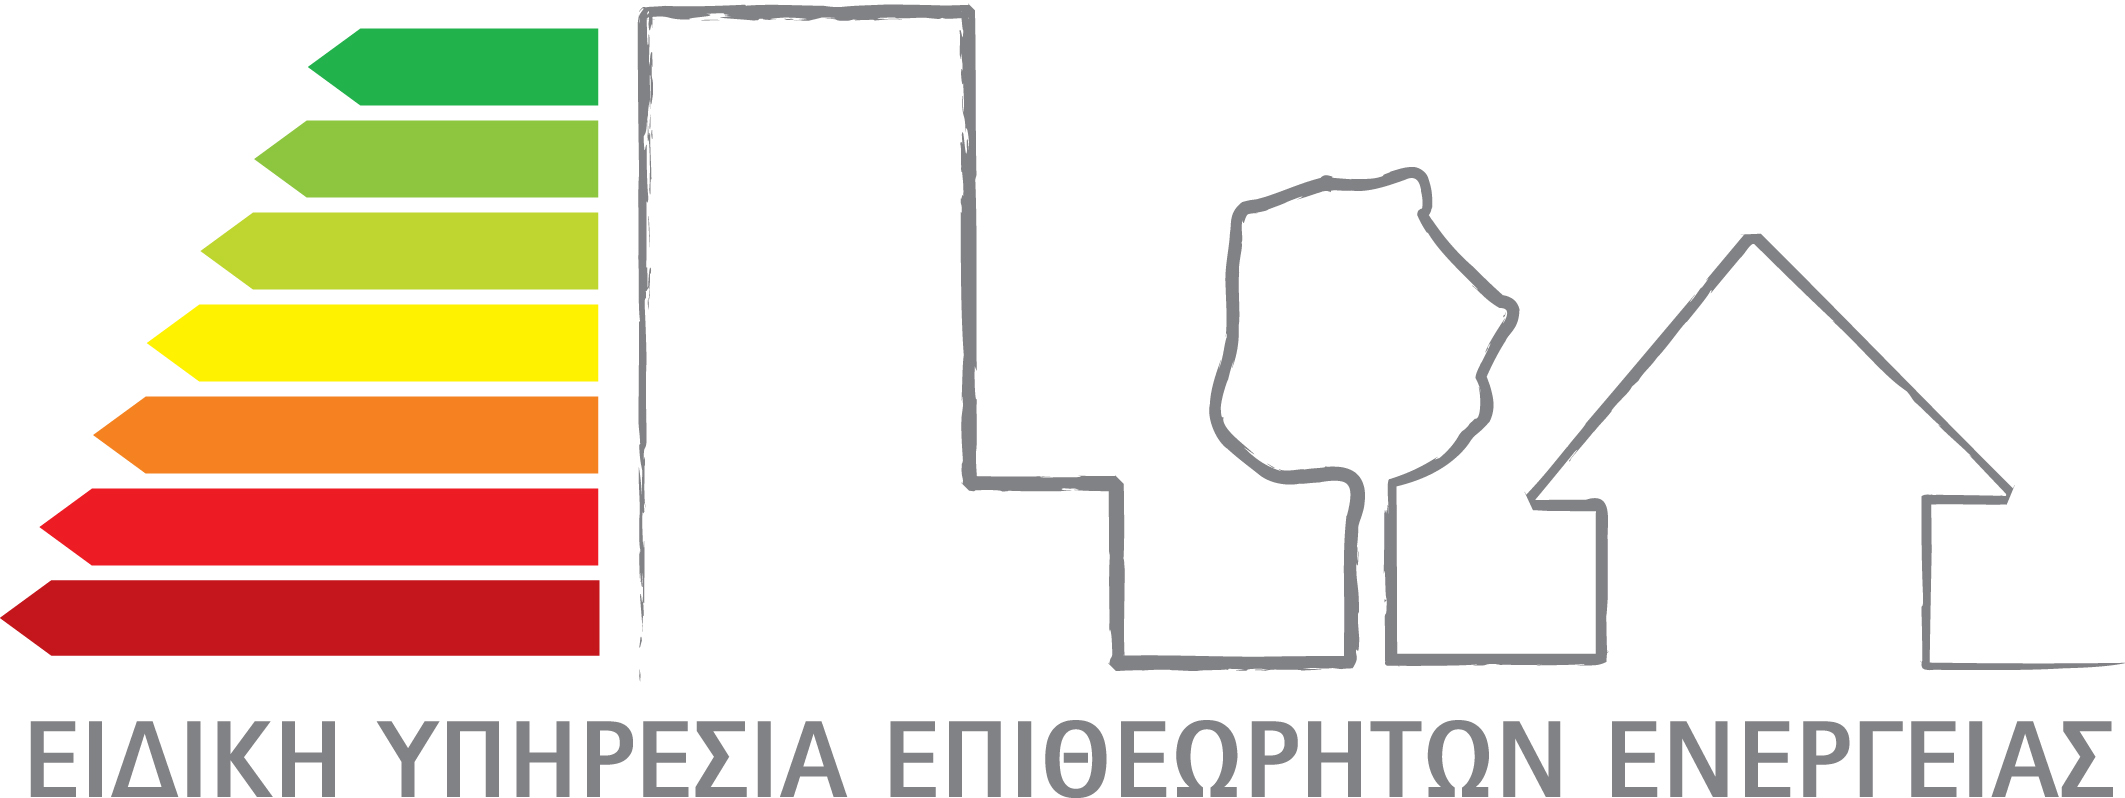 More information about "Ίδρυση Συλλόγου Ενεργειακών Επιθεωρητών Ελλάδος"